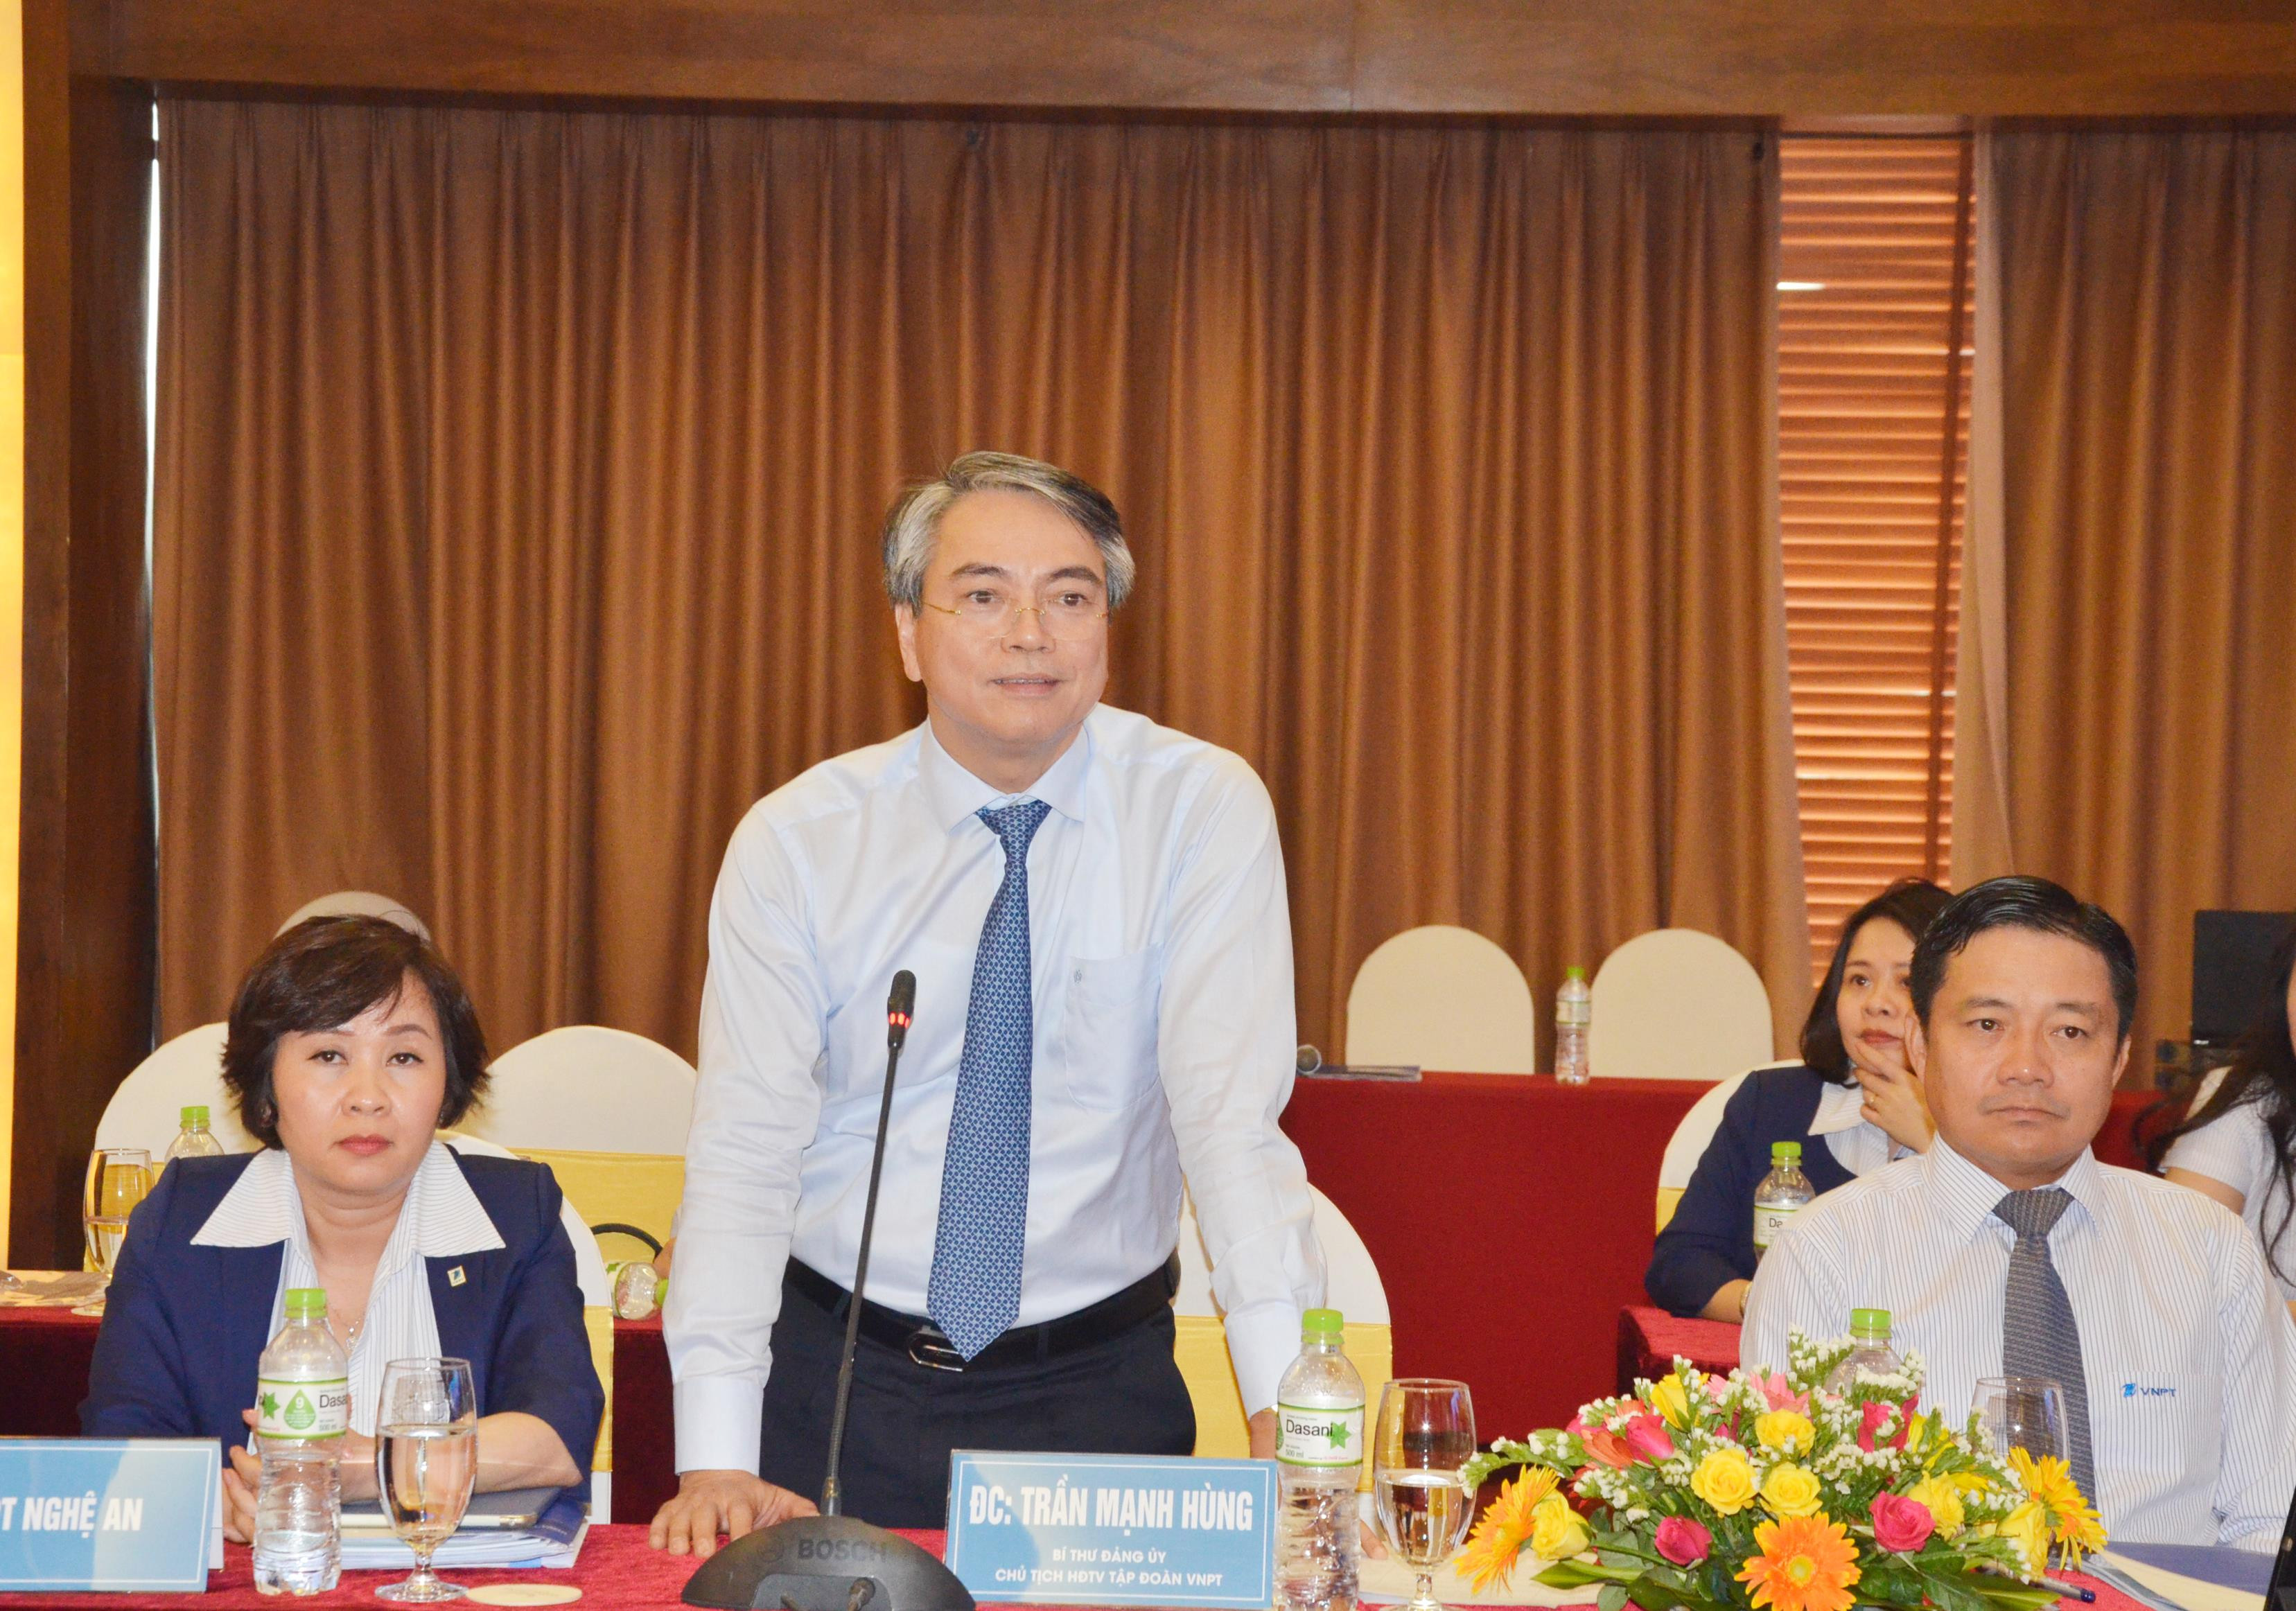 Chủ tịch Hội đồng thành viên Tập đoàn VNPT Trần Mạnh Hùng phát biểu đánh giá cao kết quả hợp tác giữa Nghệ An và Tập đoàn VNPT. Ảnh: Thanh Lê